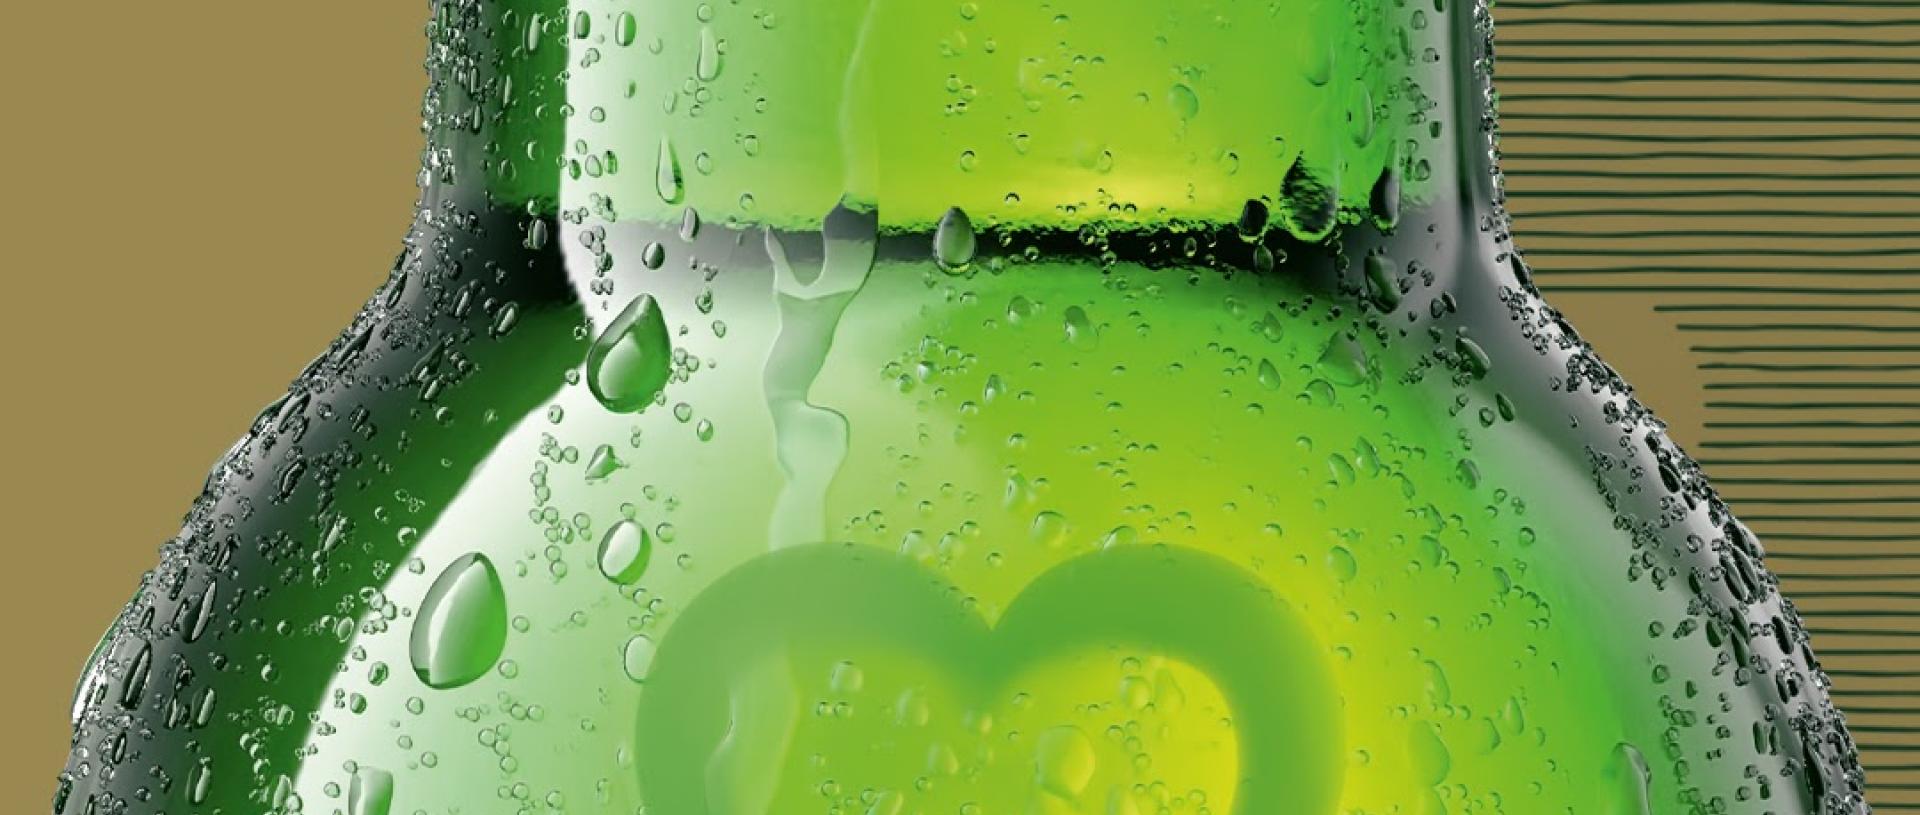 Πόσο πράσινη είναι η μπύρα σου;